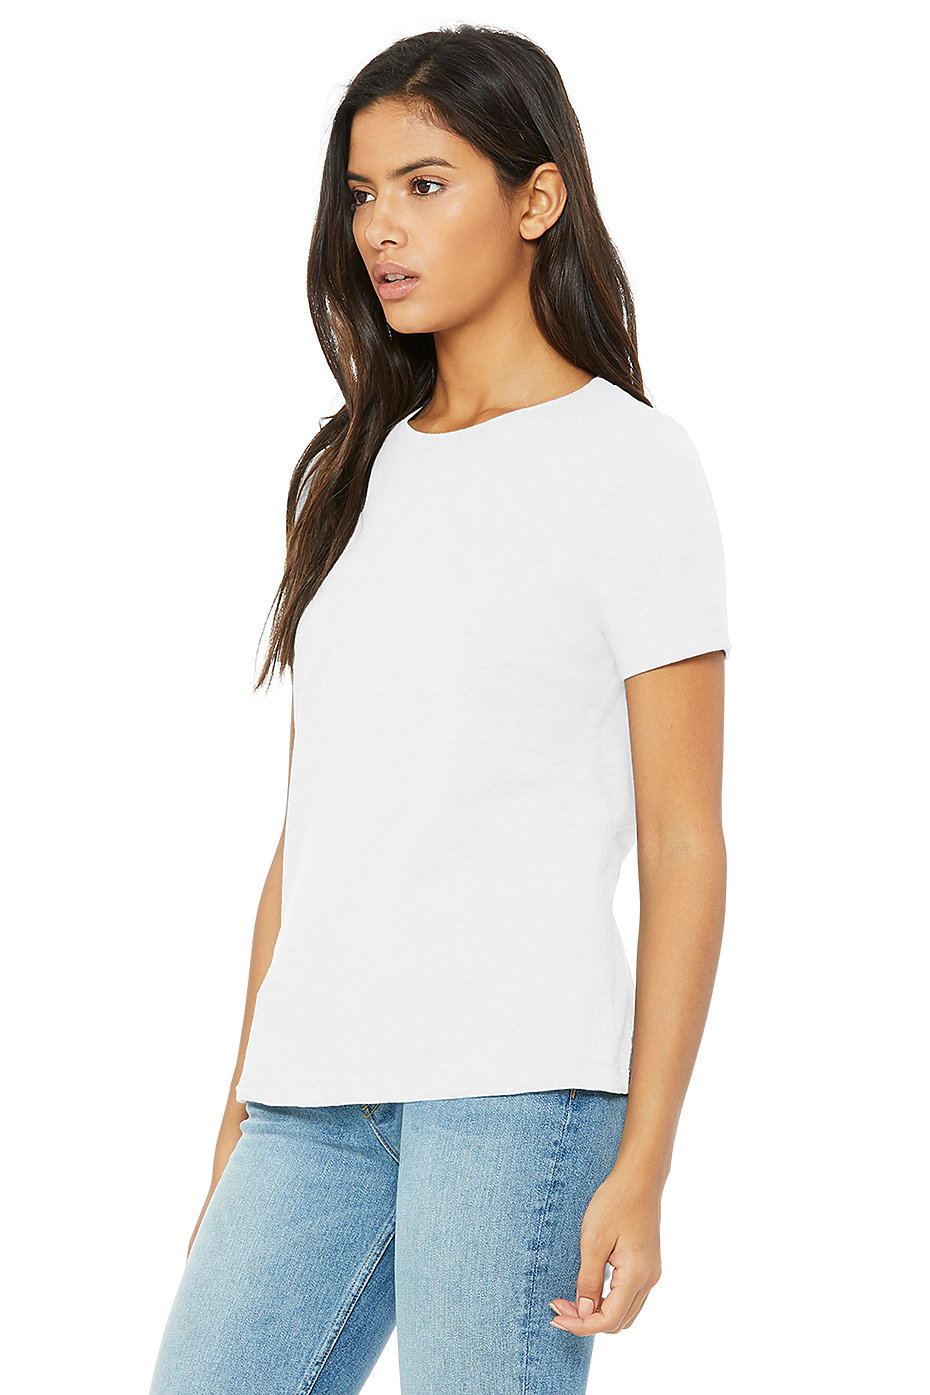 Plain Jersey T Shirts | Wholesale Jersey T Shirts | Womens Bulk T ...